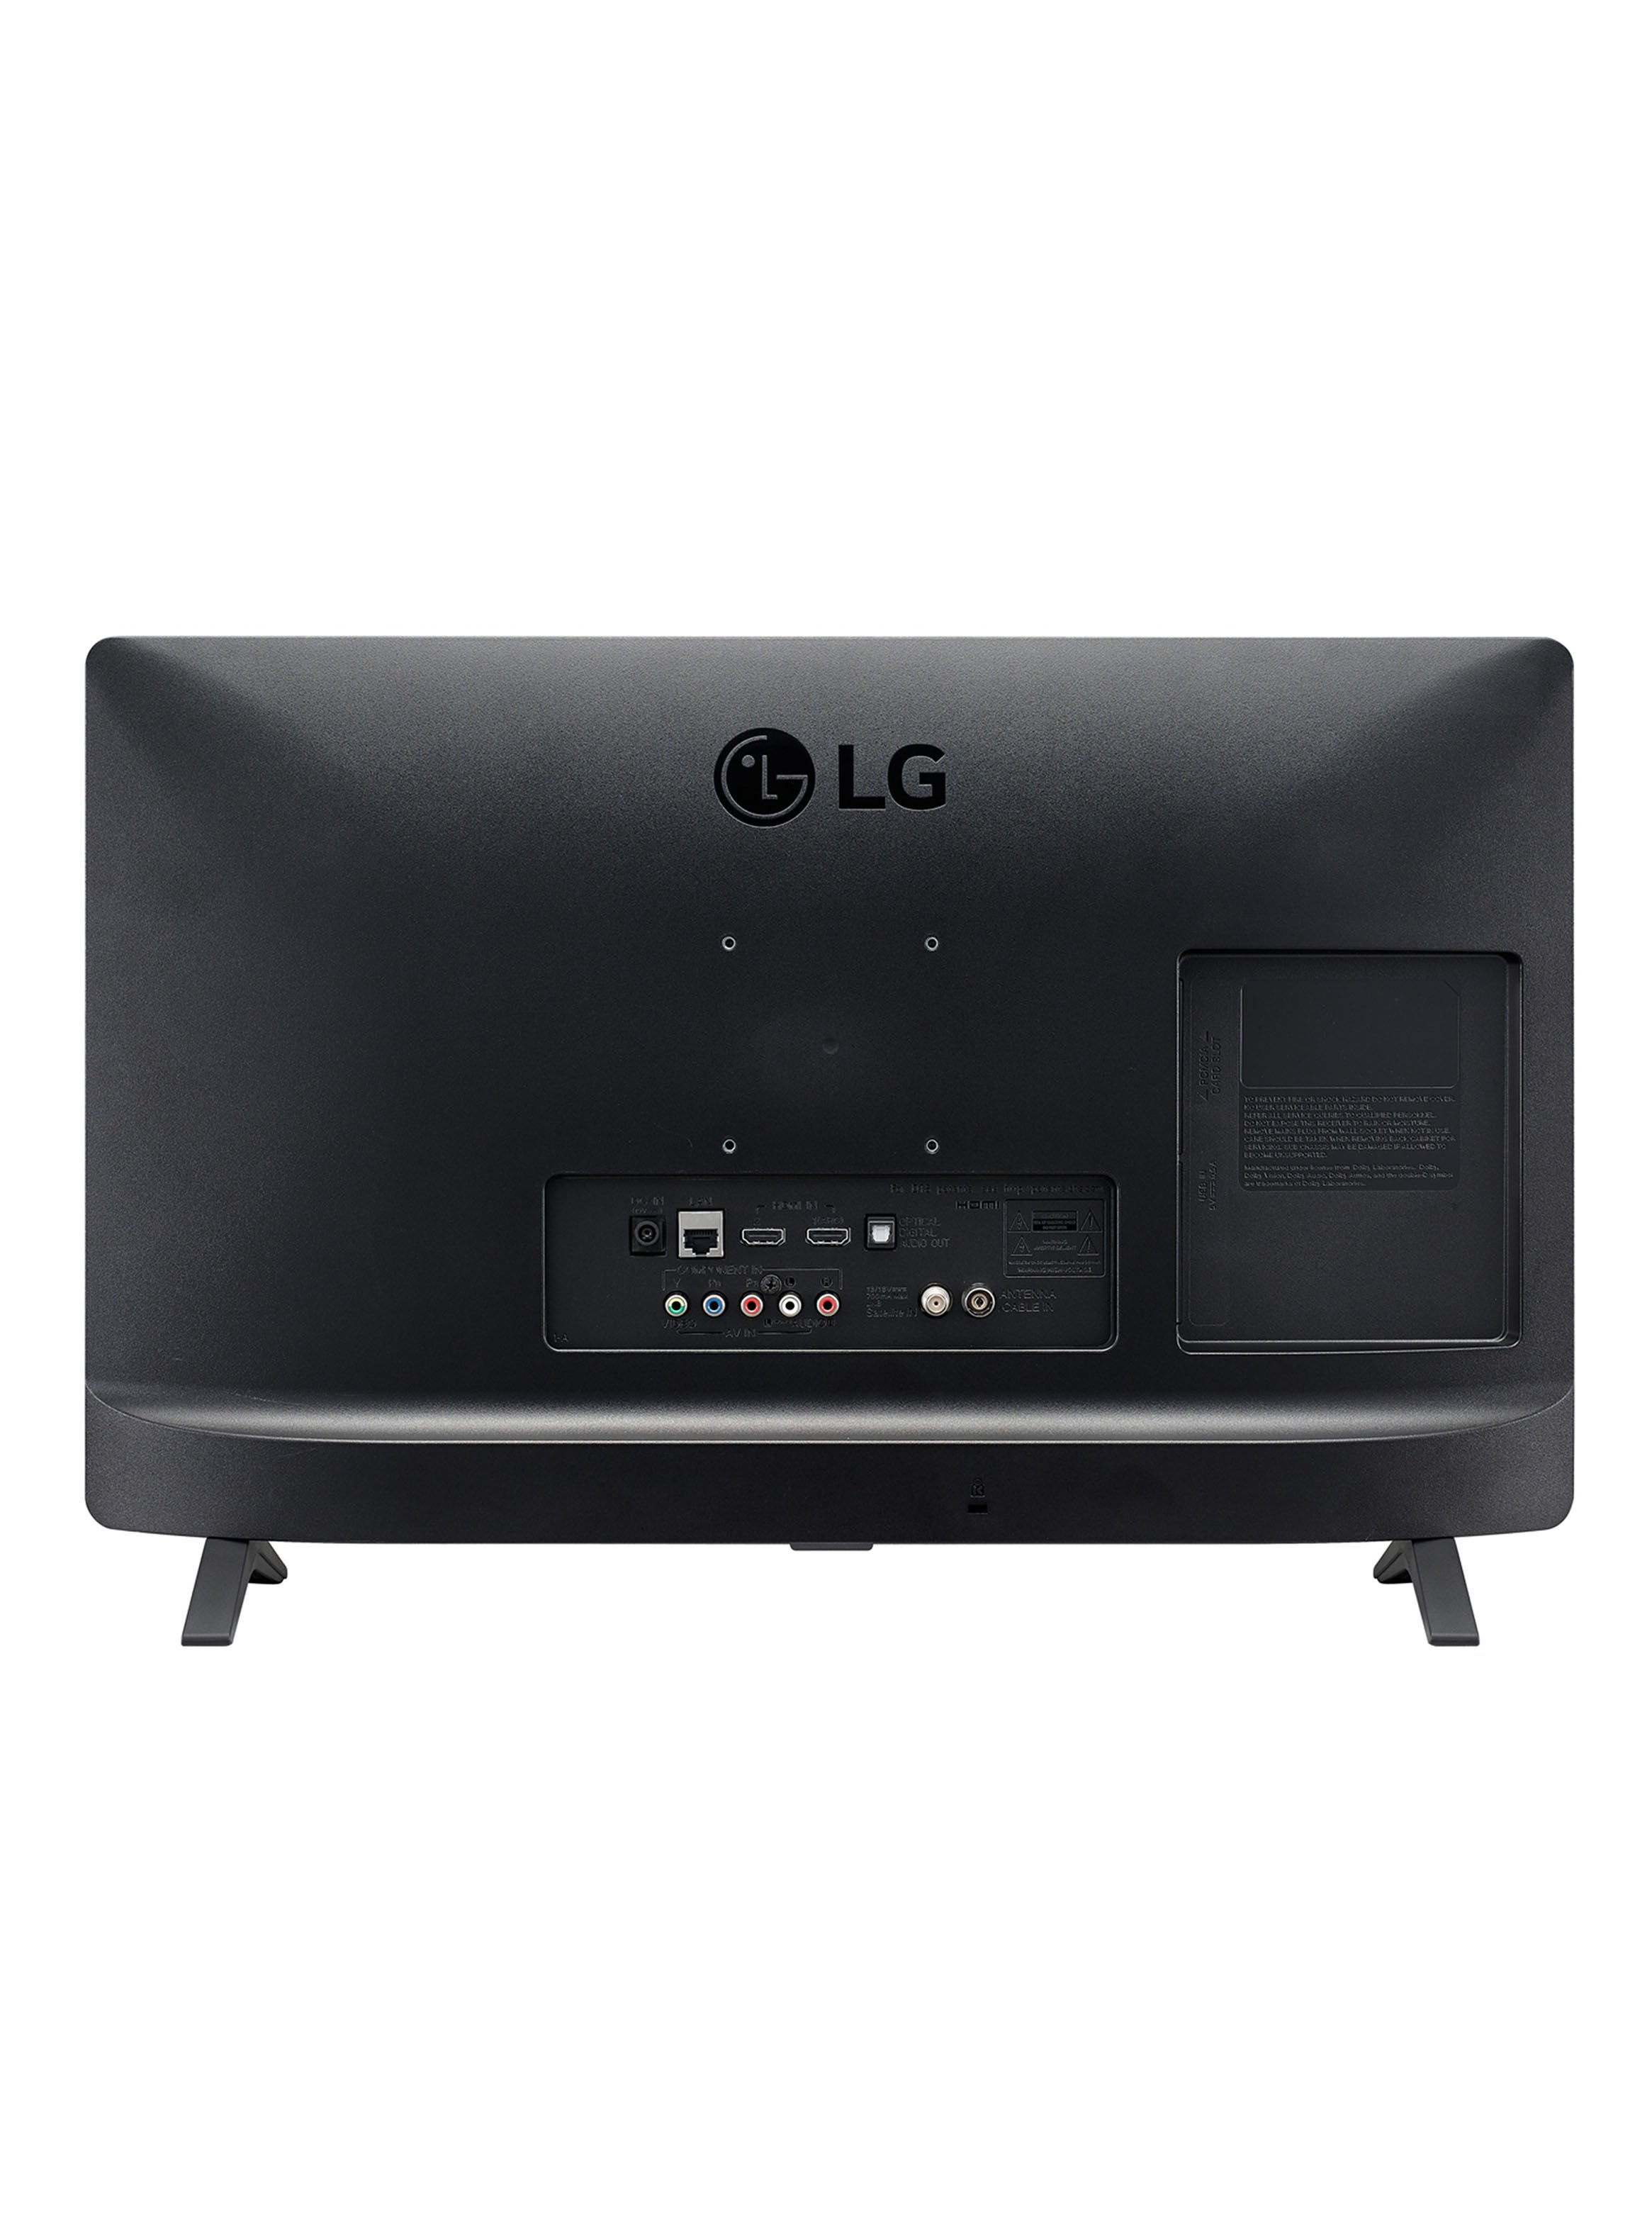 LED LG Smart TV 24 HD 24TL520S-PS - Televisores LED